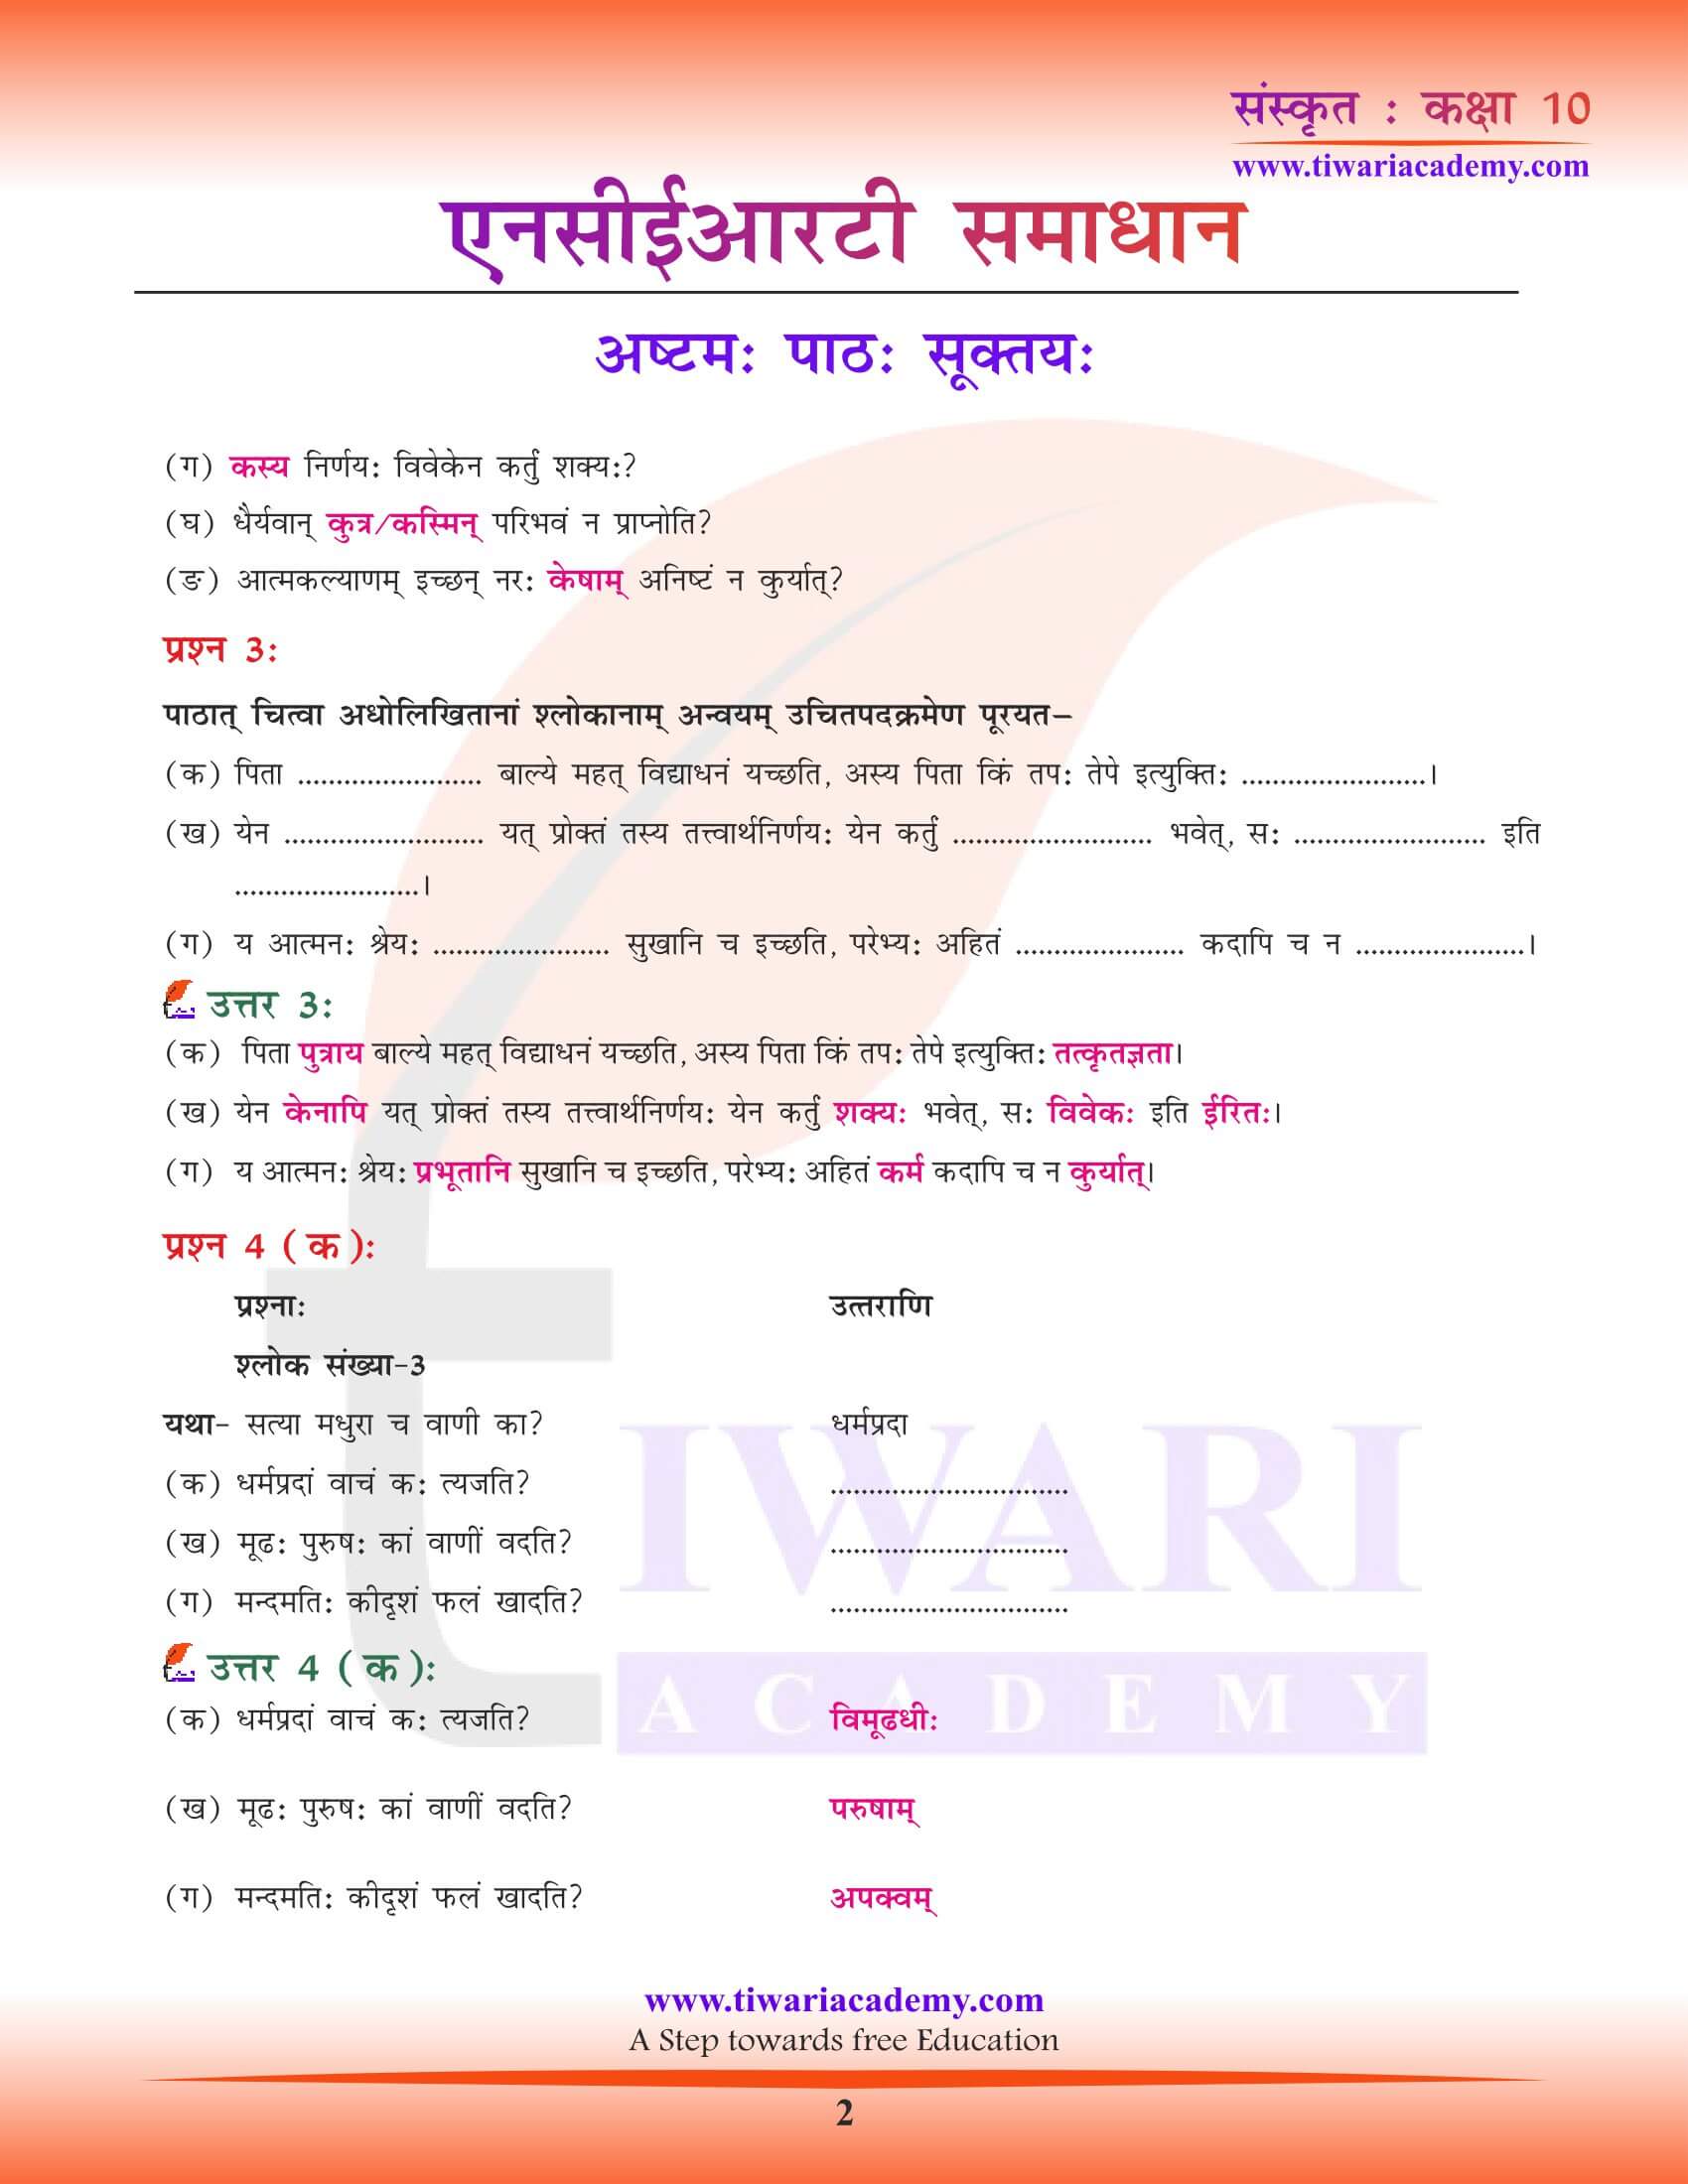 कक्षा 10 संस्कृत पाठ 8 सूक्तय: के प्रश्न उत्तर